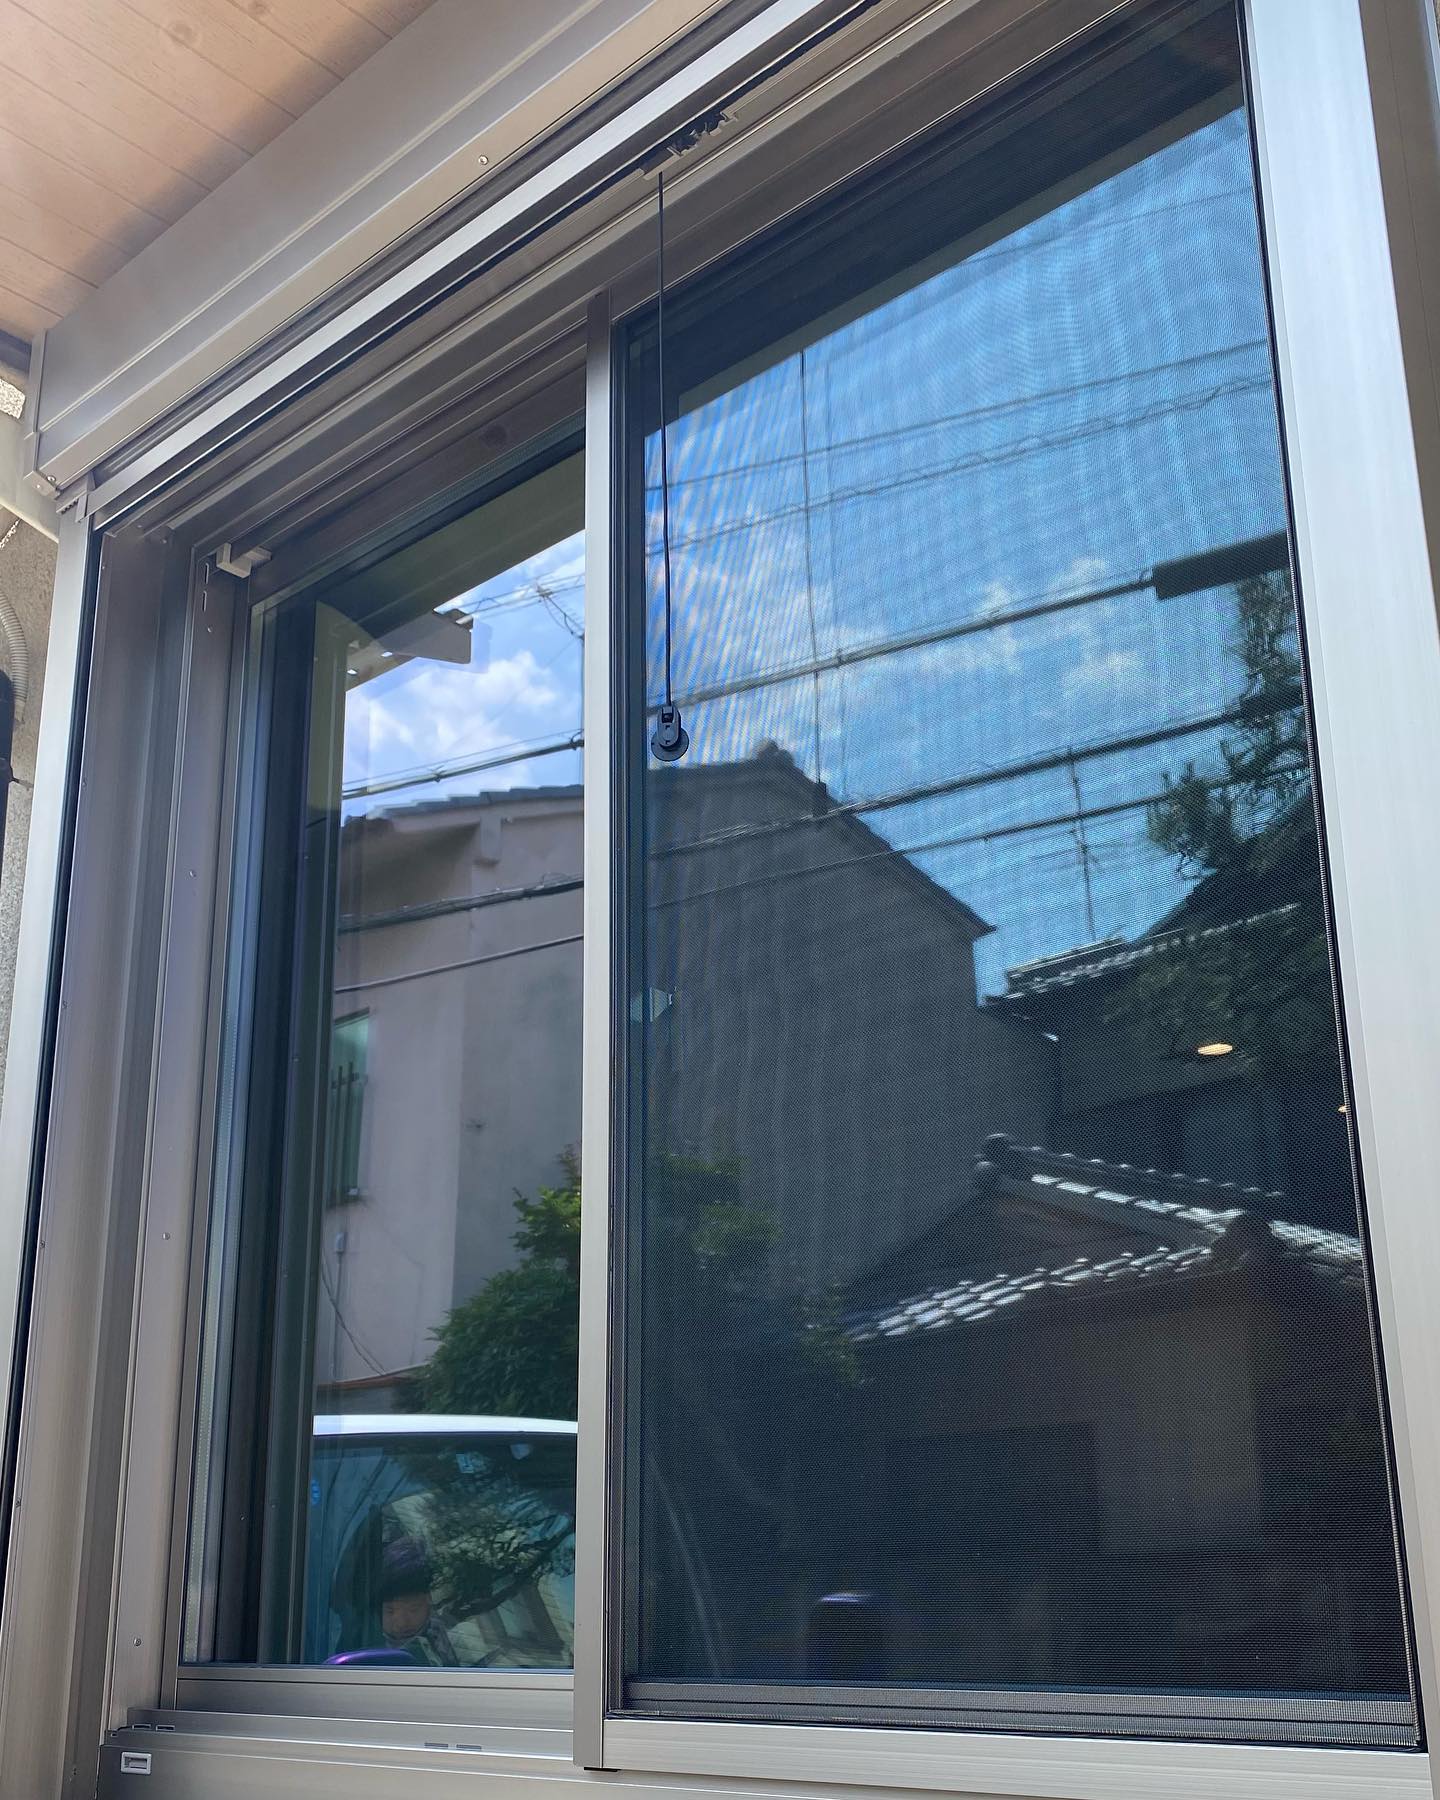 窓リフォーム現場完工です
リフォームシャッター付きです
断熱と遮音
暑くなってきました。外からの熱をカットすると同時にエアコンで冷やした空気を逃しません。
車道に面してますが音も随分入らなくなりました。
#マルワ
#リフォーム
#京都市左京区
#LIXIL
#リプラス
#複層ガラス
#半日で完成
#意外と工事時間短いんです